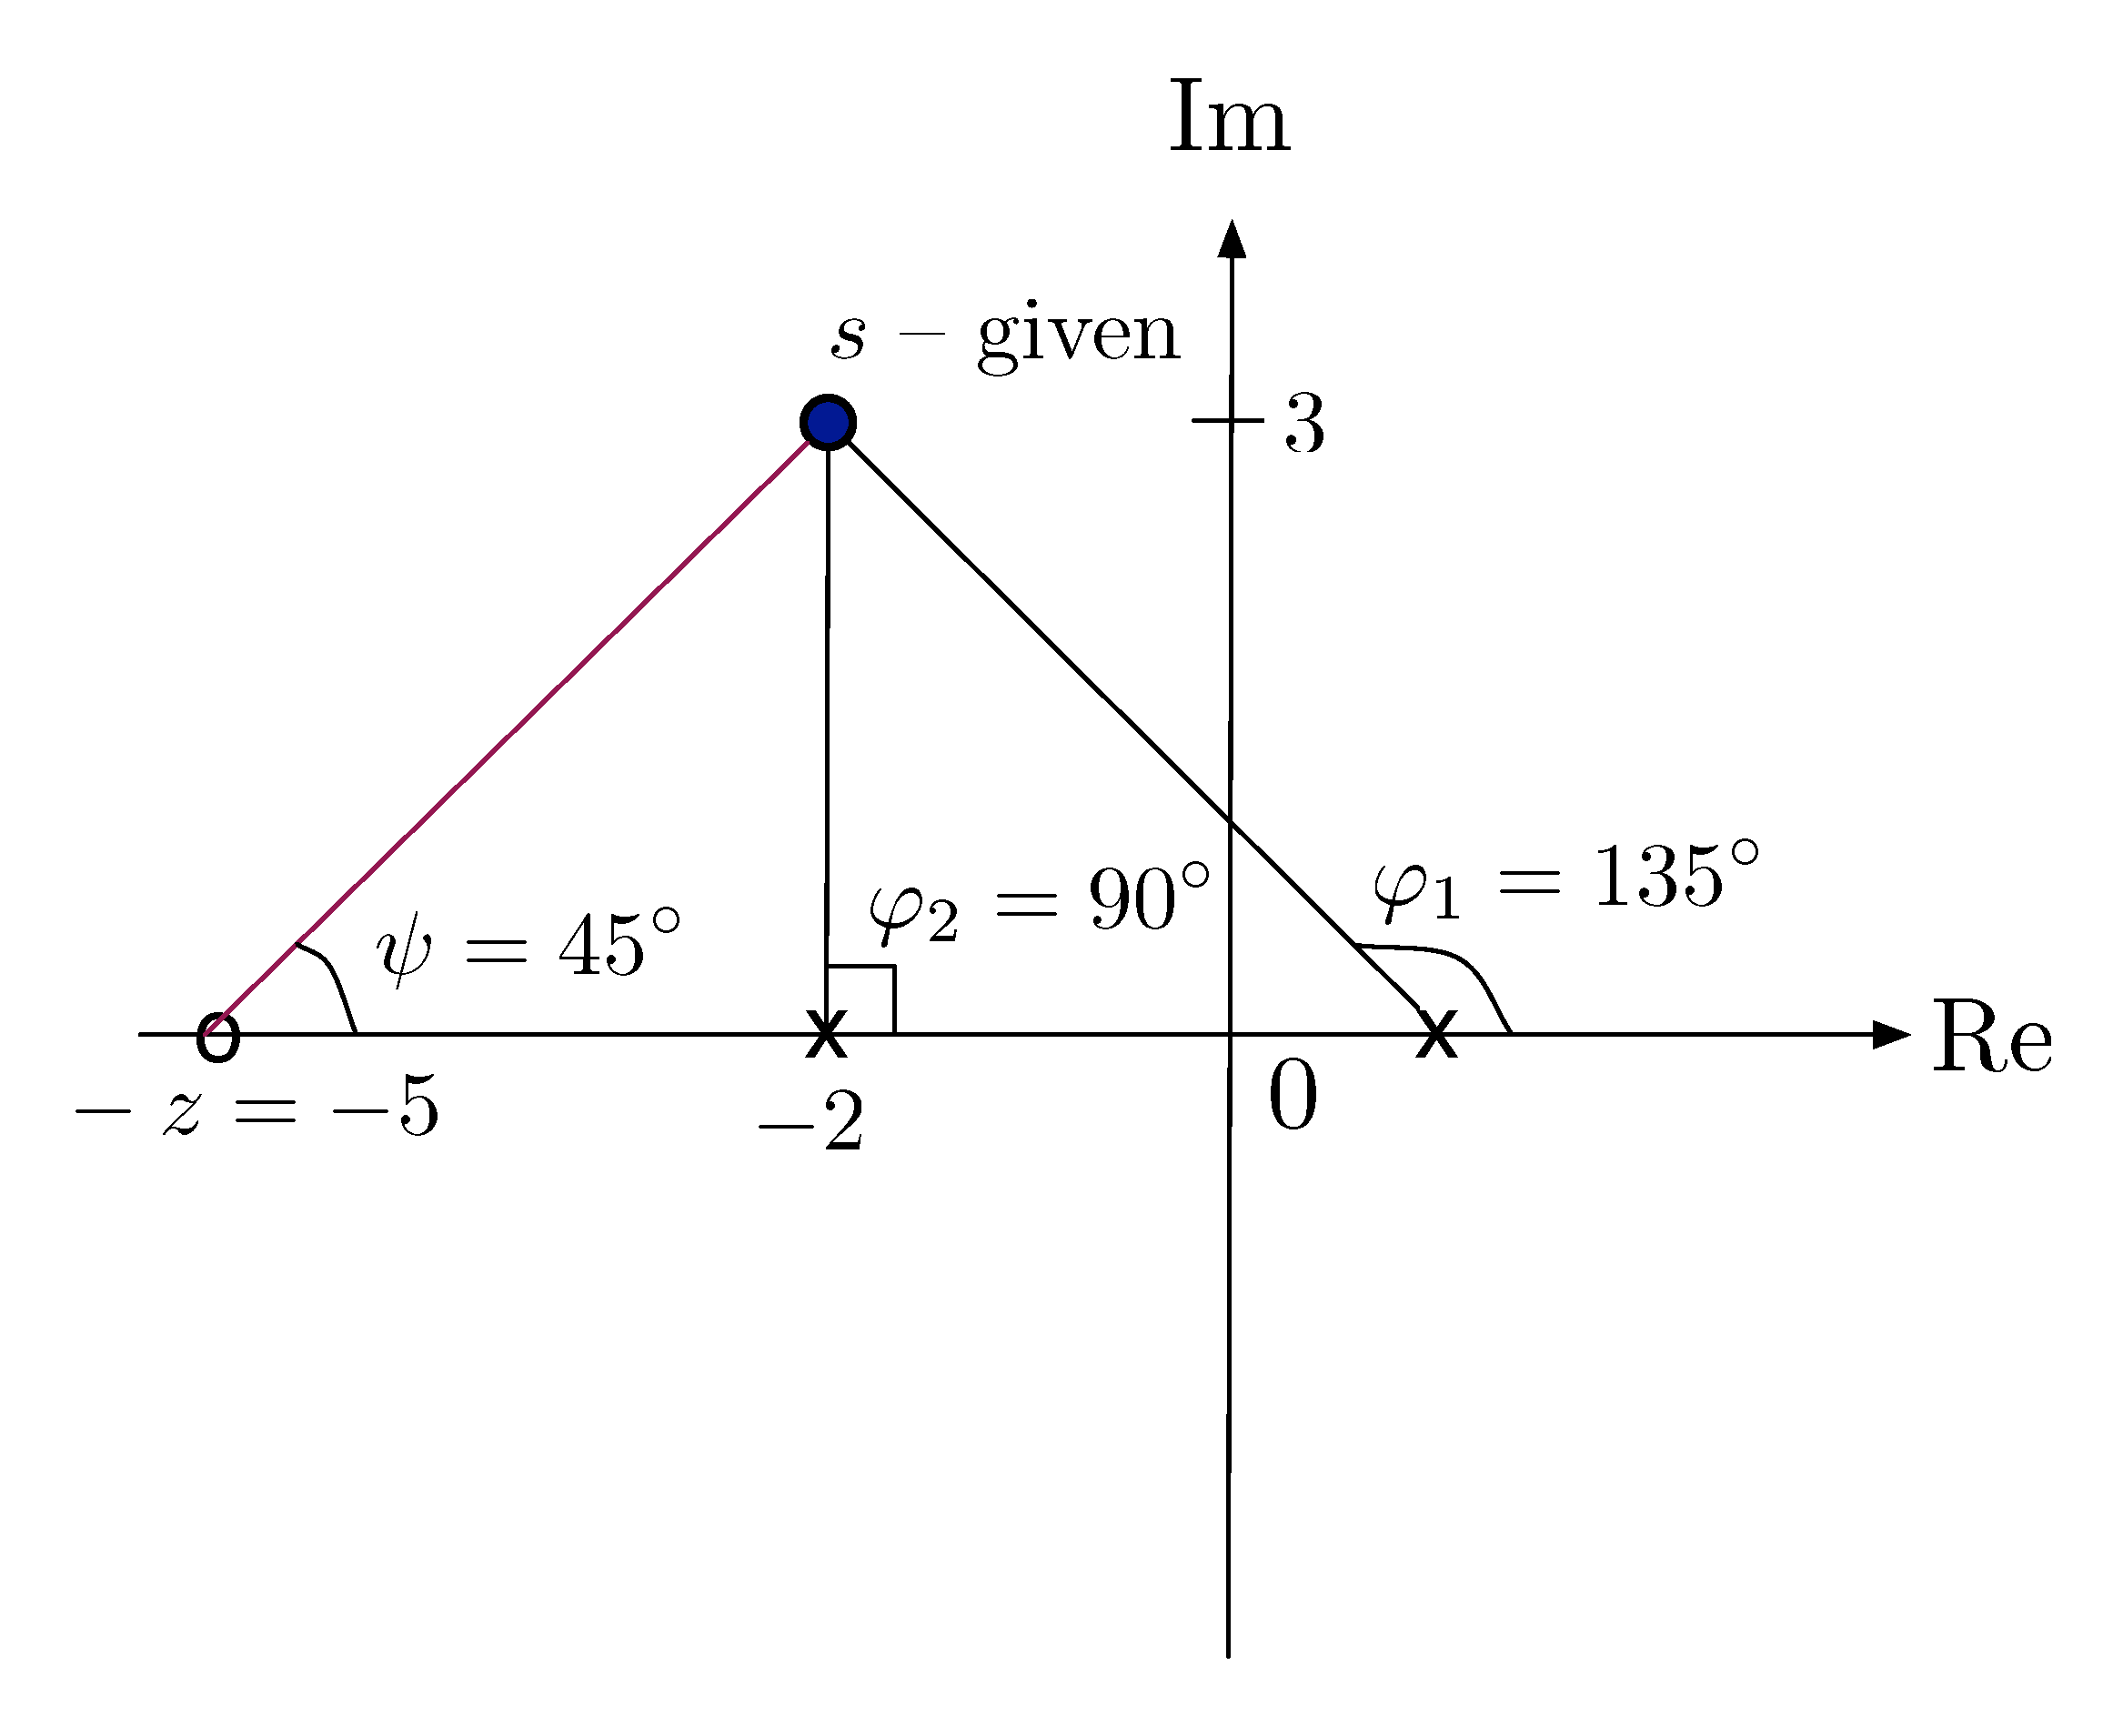 example z = -5